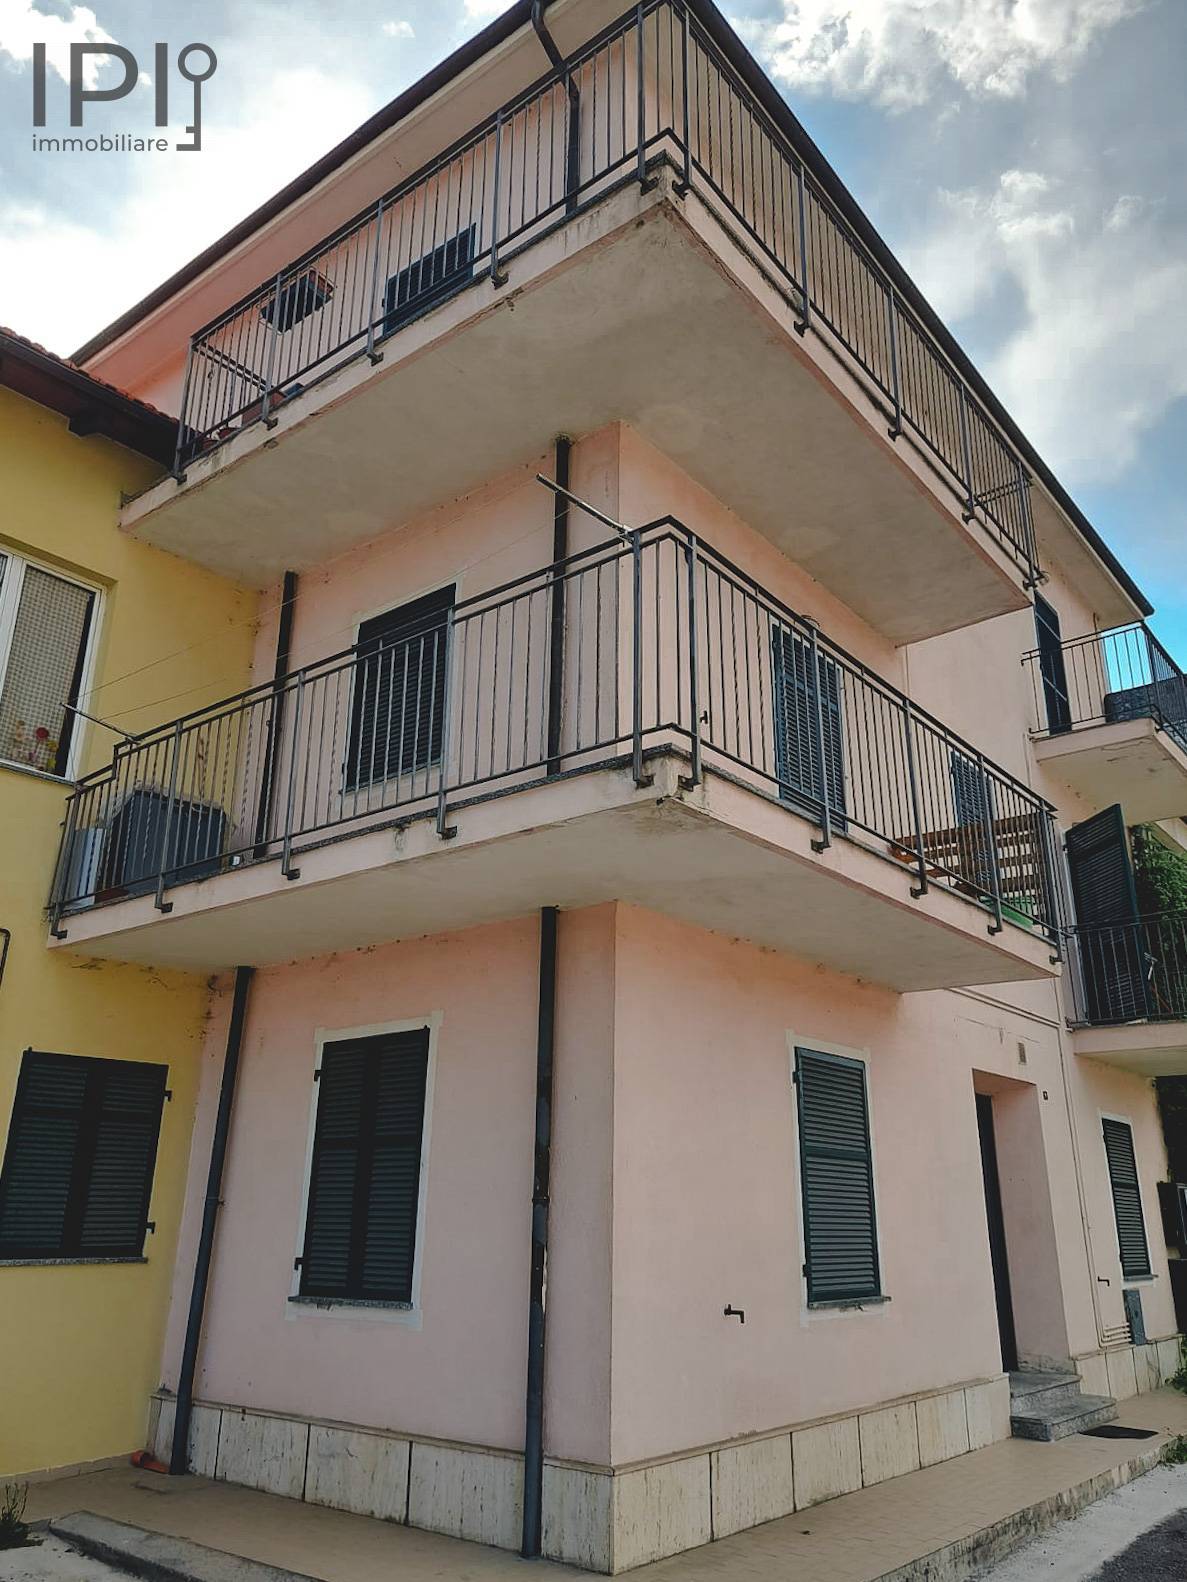 Appartamento in vendita a Millesimo, 1 locali, prezzo € 25.000 | PortaleAgenzieImmobiliari.it